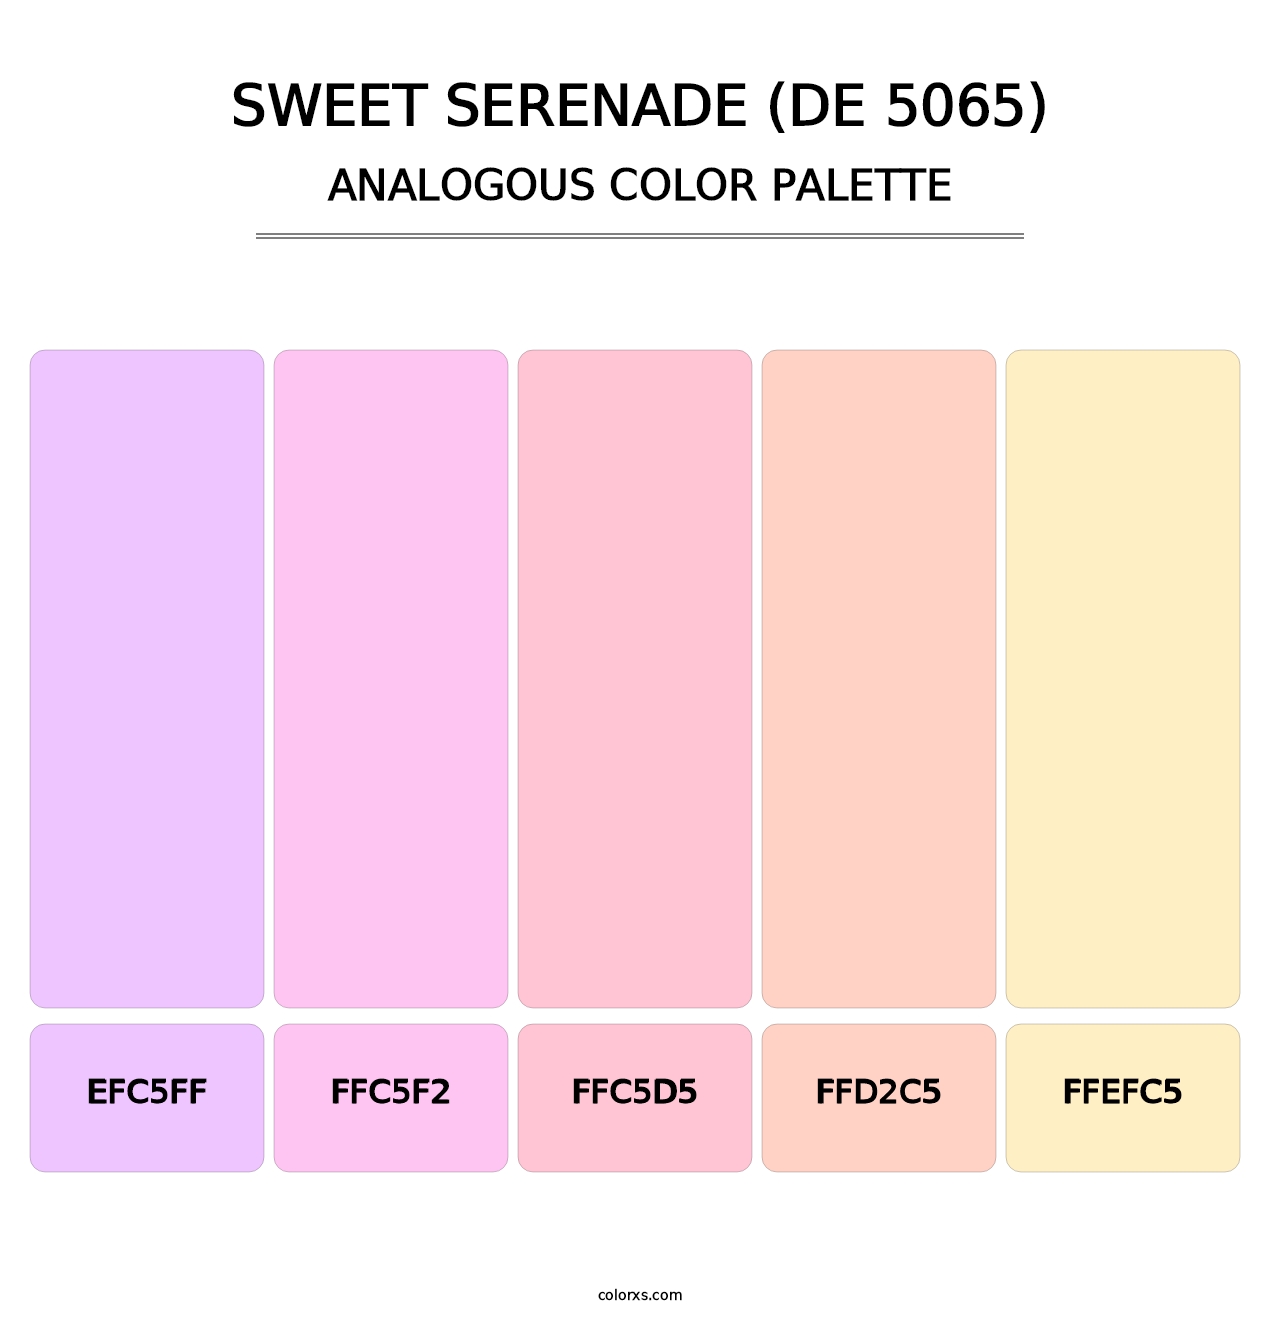 Sweet Serenade (DE 5065) - Analogous Color Palette